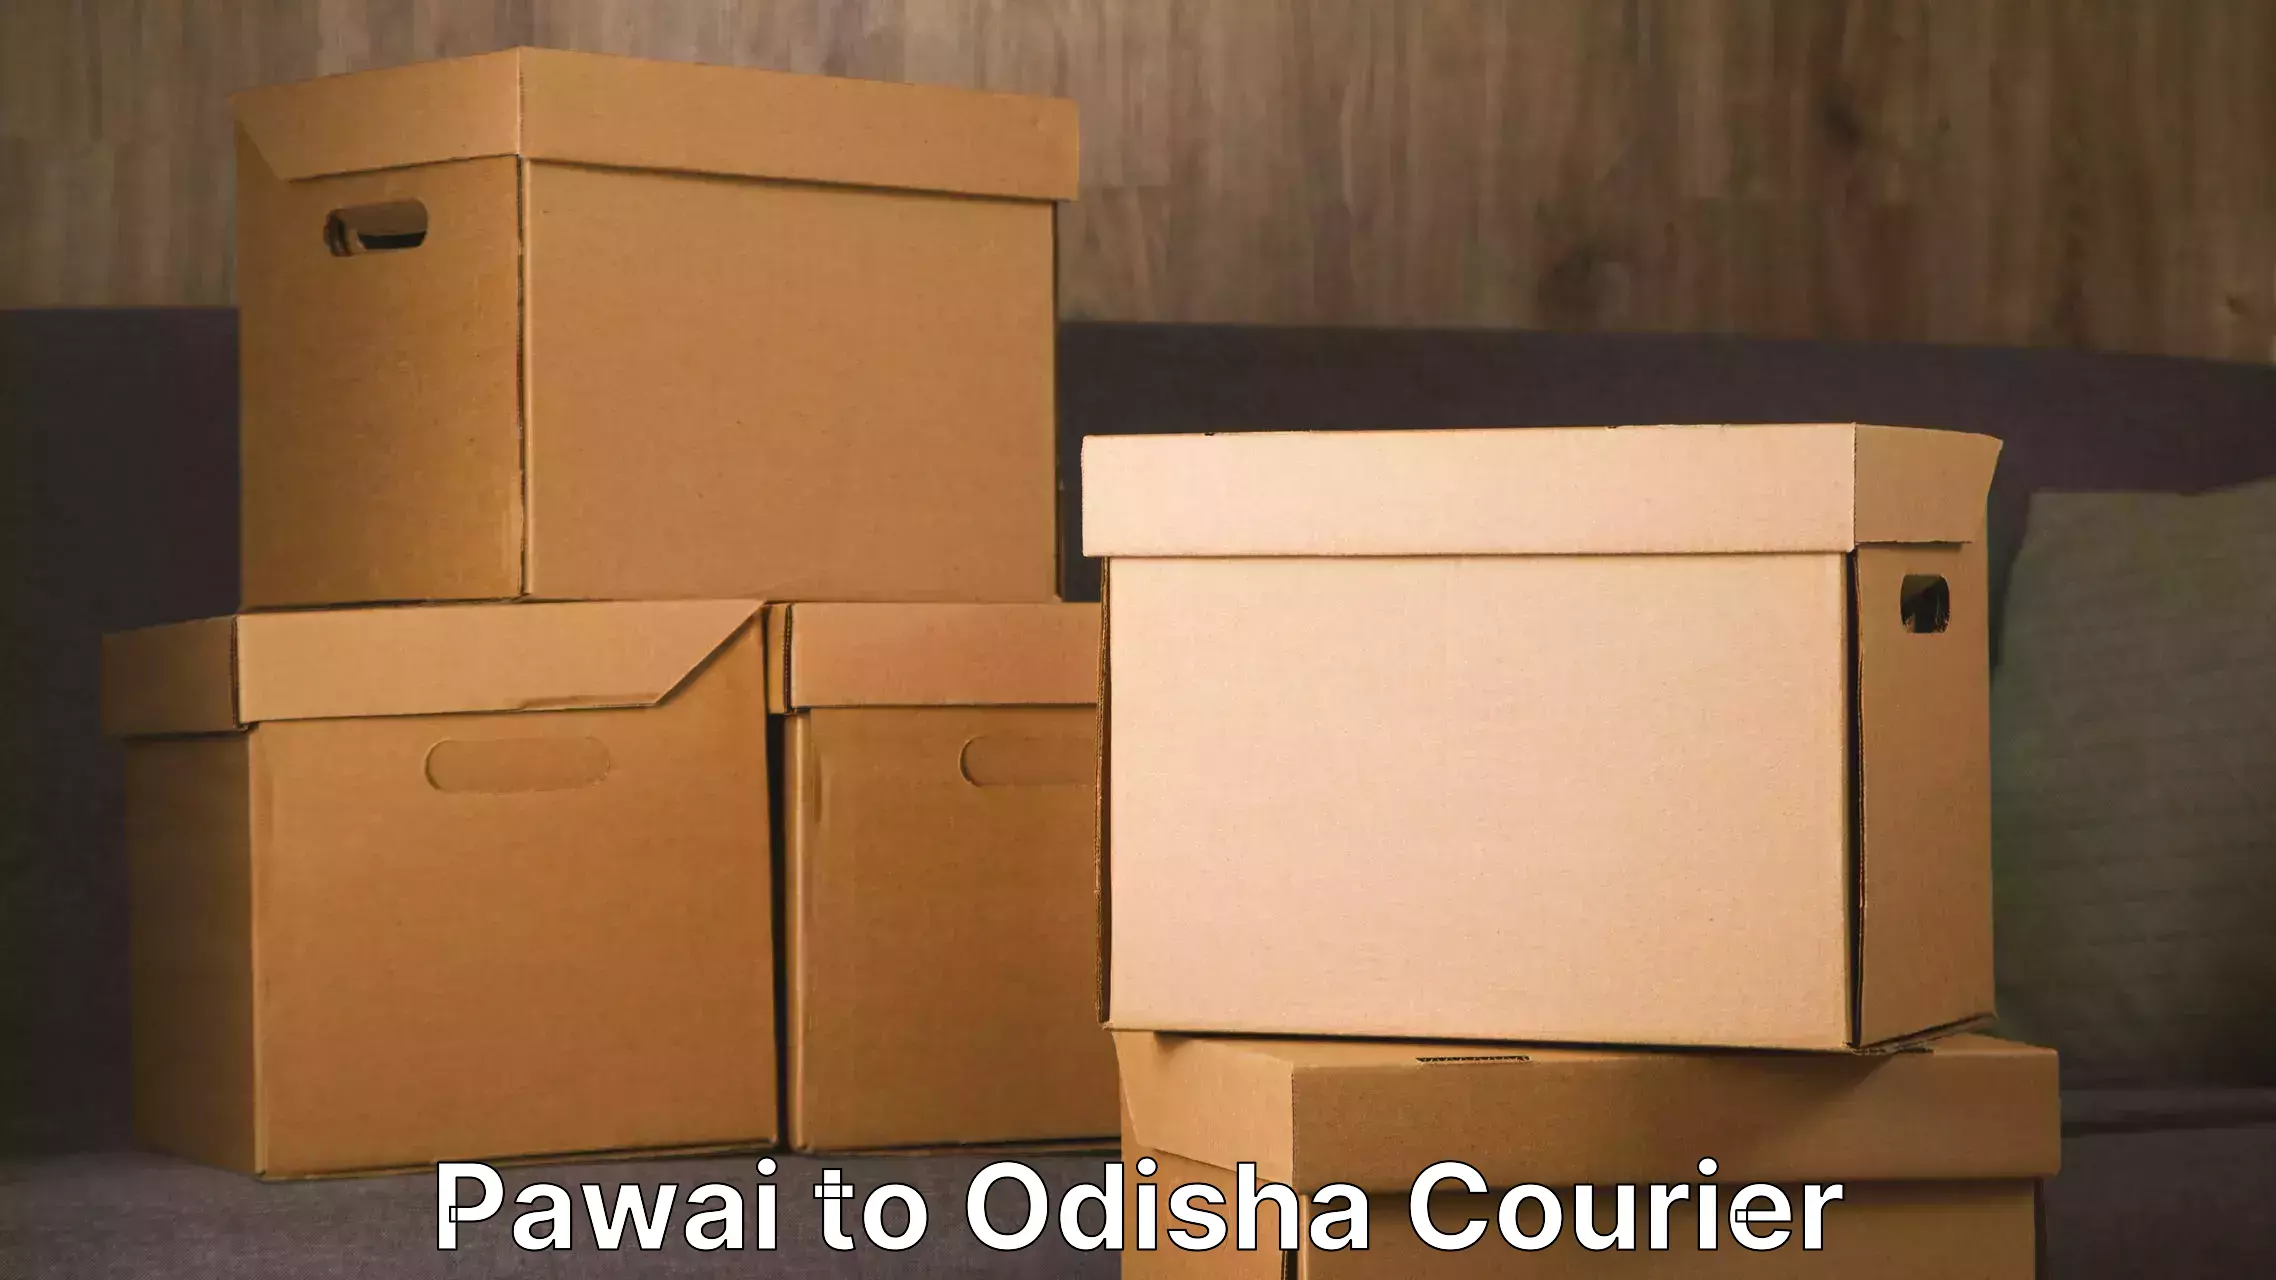 Furniture moving experts Pawai to Bhubaneswar